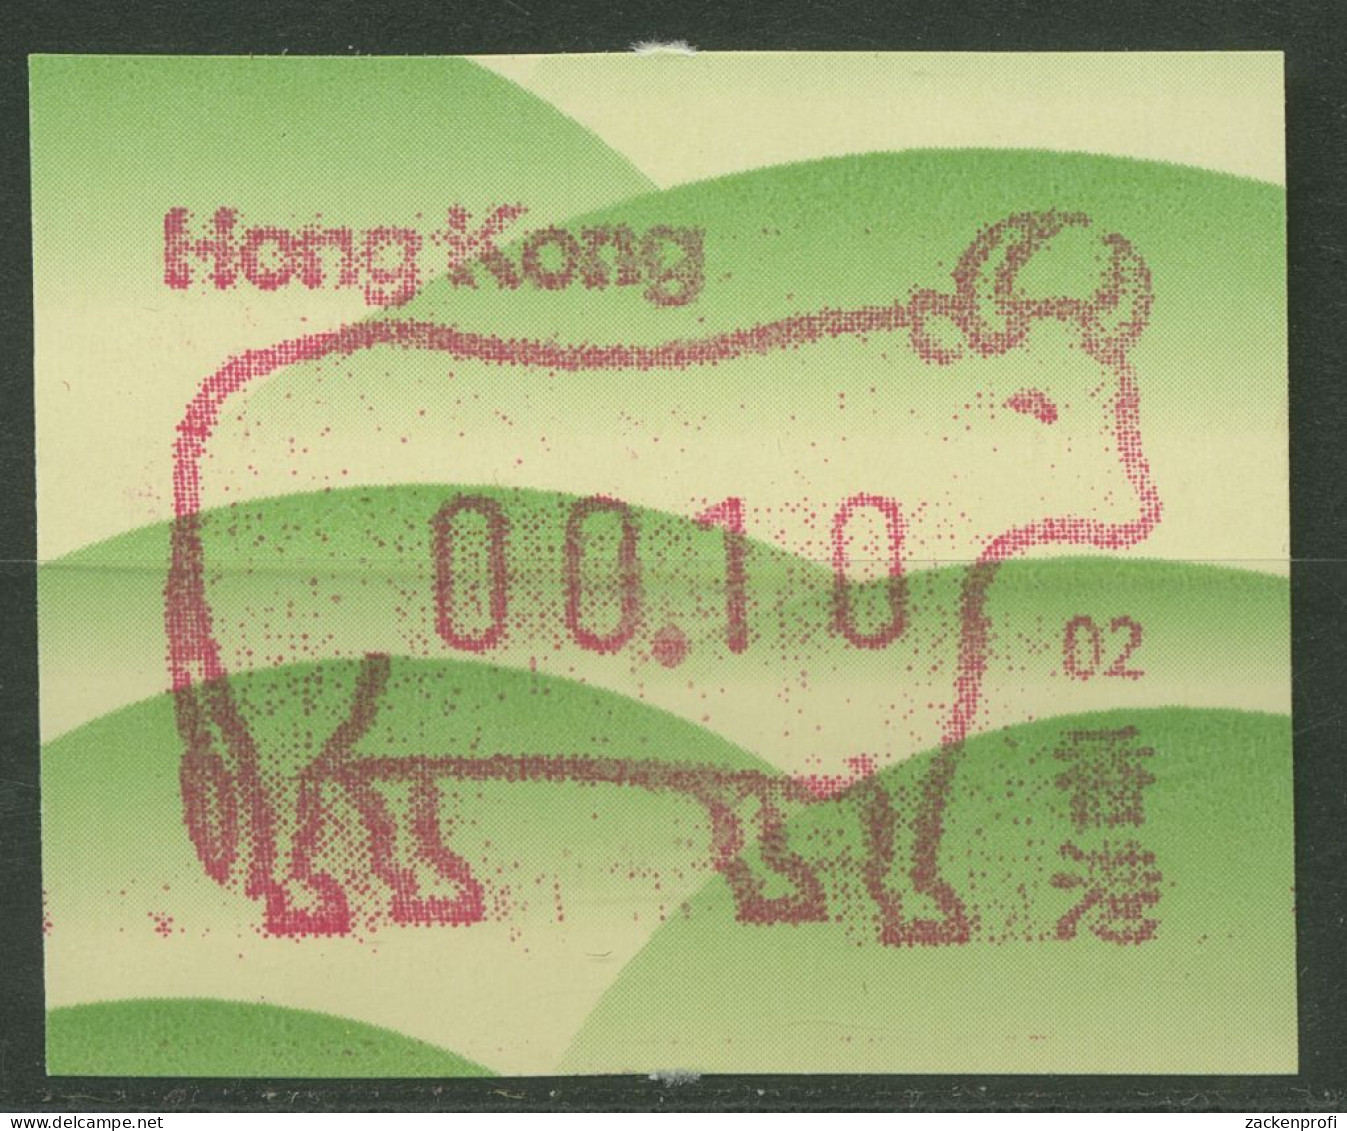 Hongkong 1997 Jahr Des Ochsen Automatenmarke Einzelwert ATM 12.2 Postfrisch - Distributori